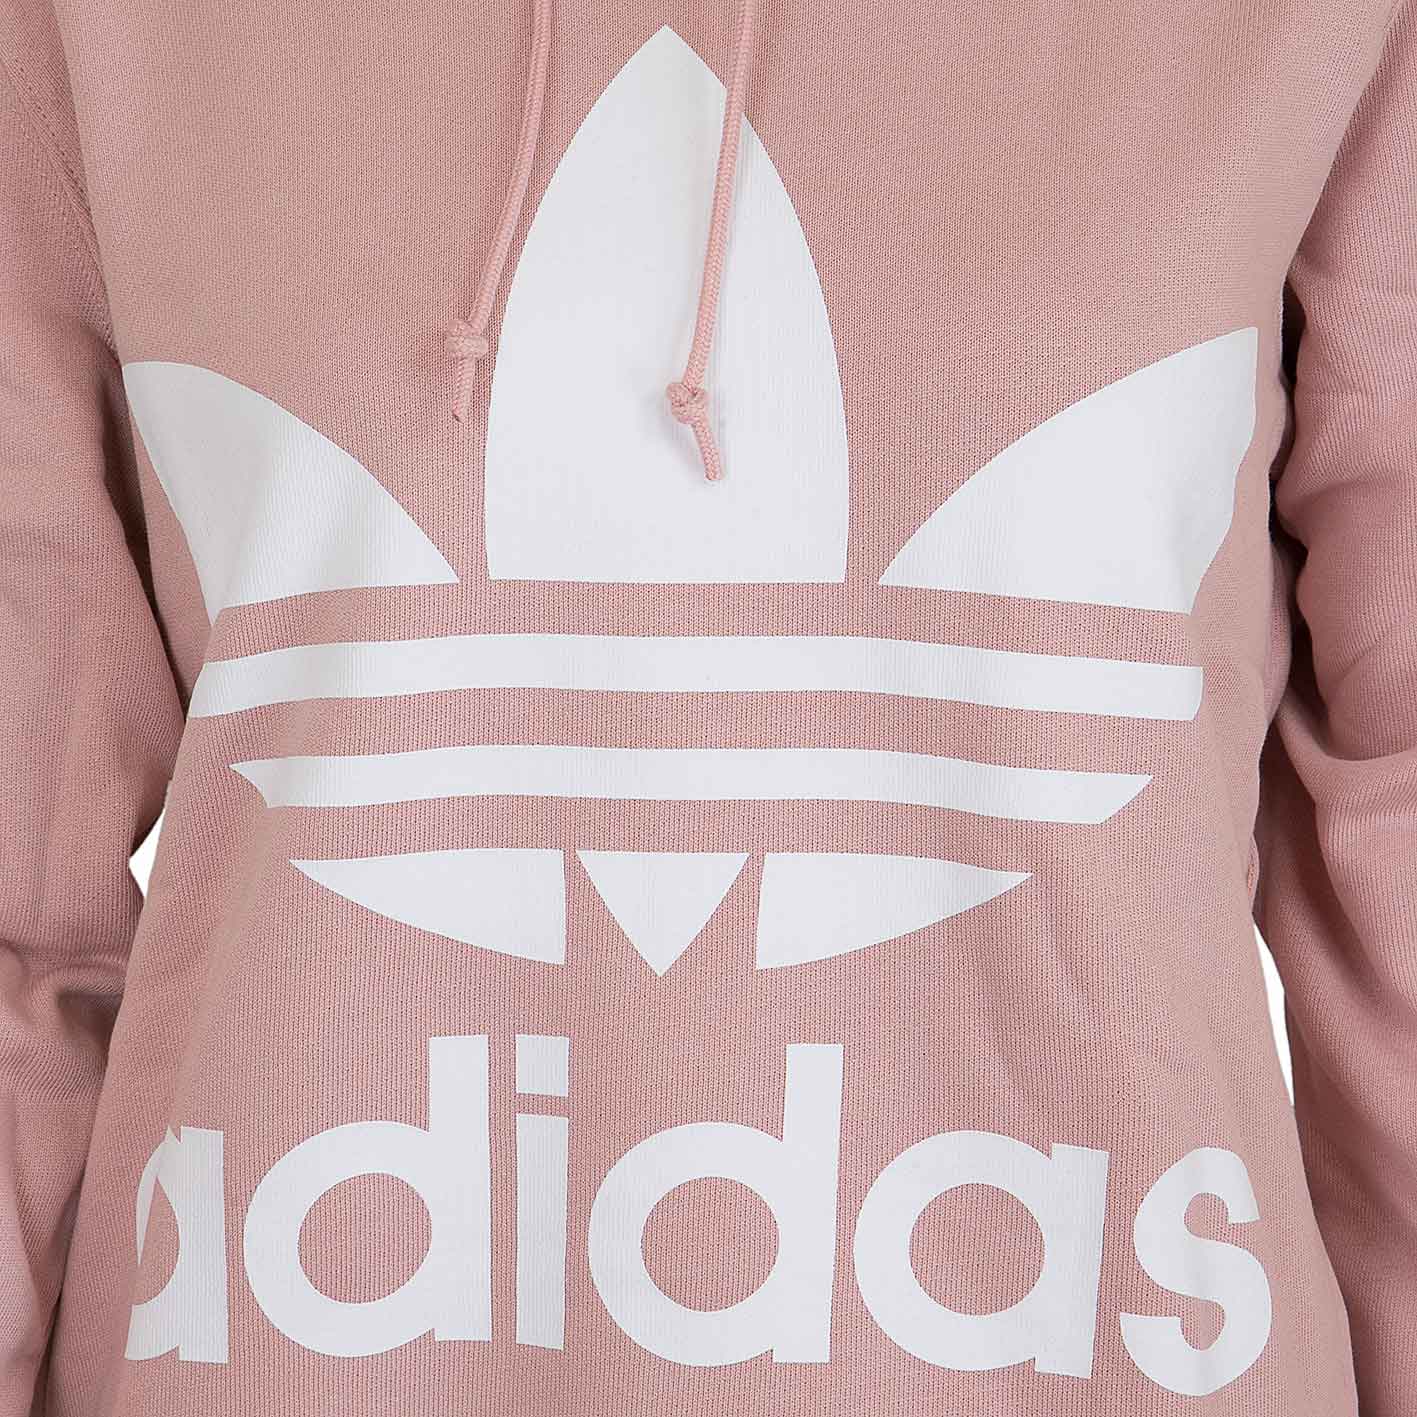 ☆ Adidas Originals Damen Hoody Trefoil pink - hier bestellen!